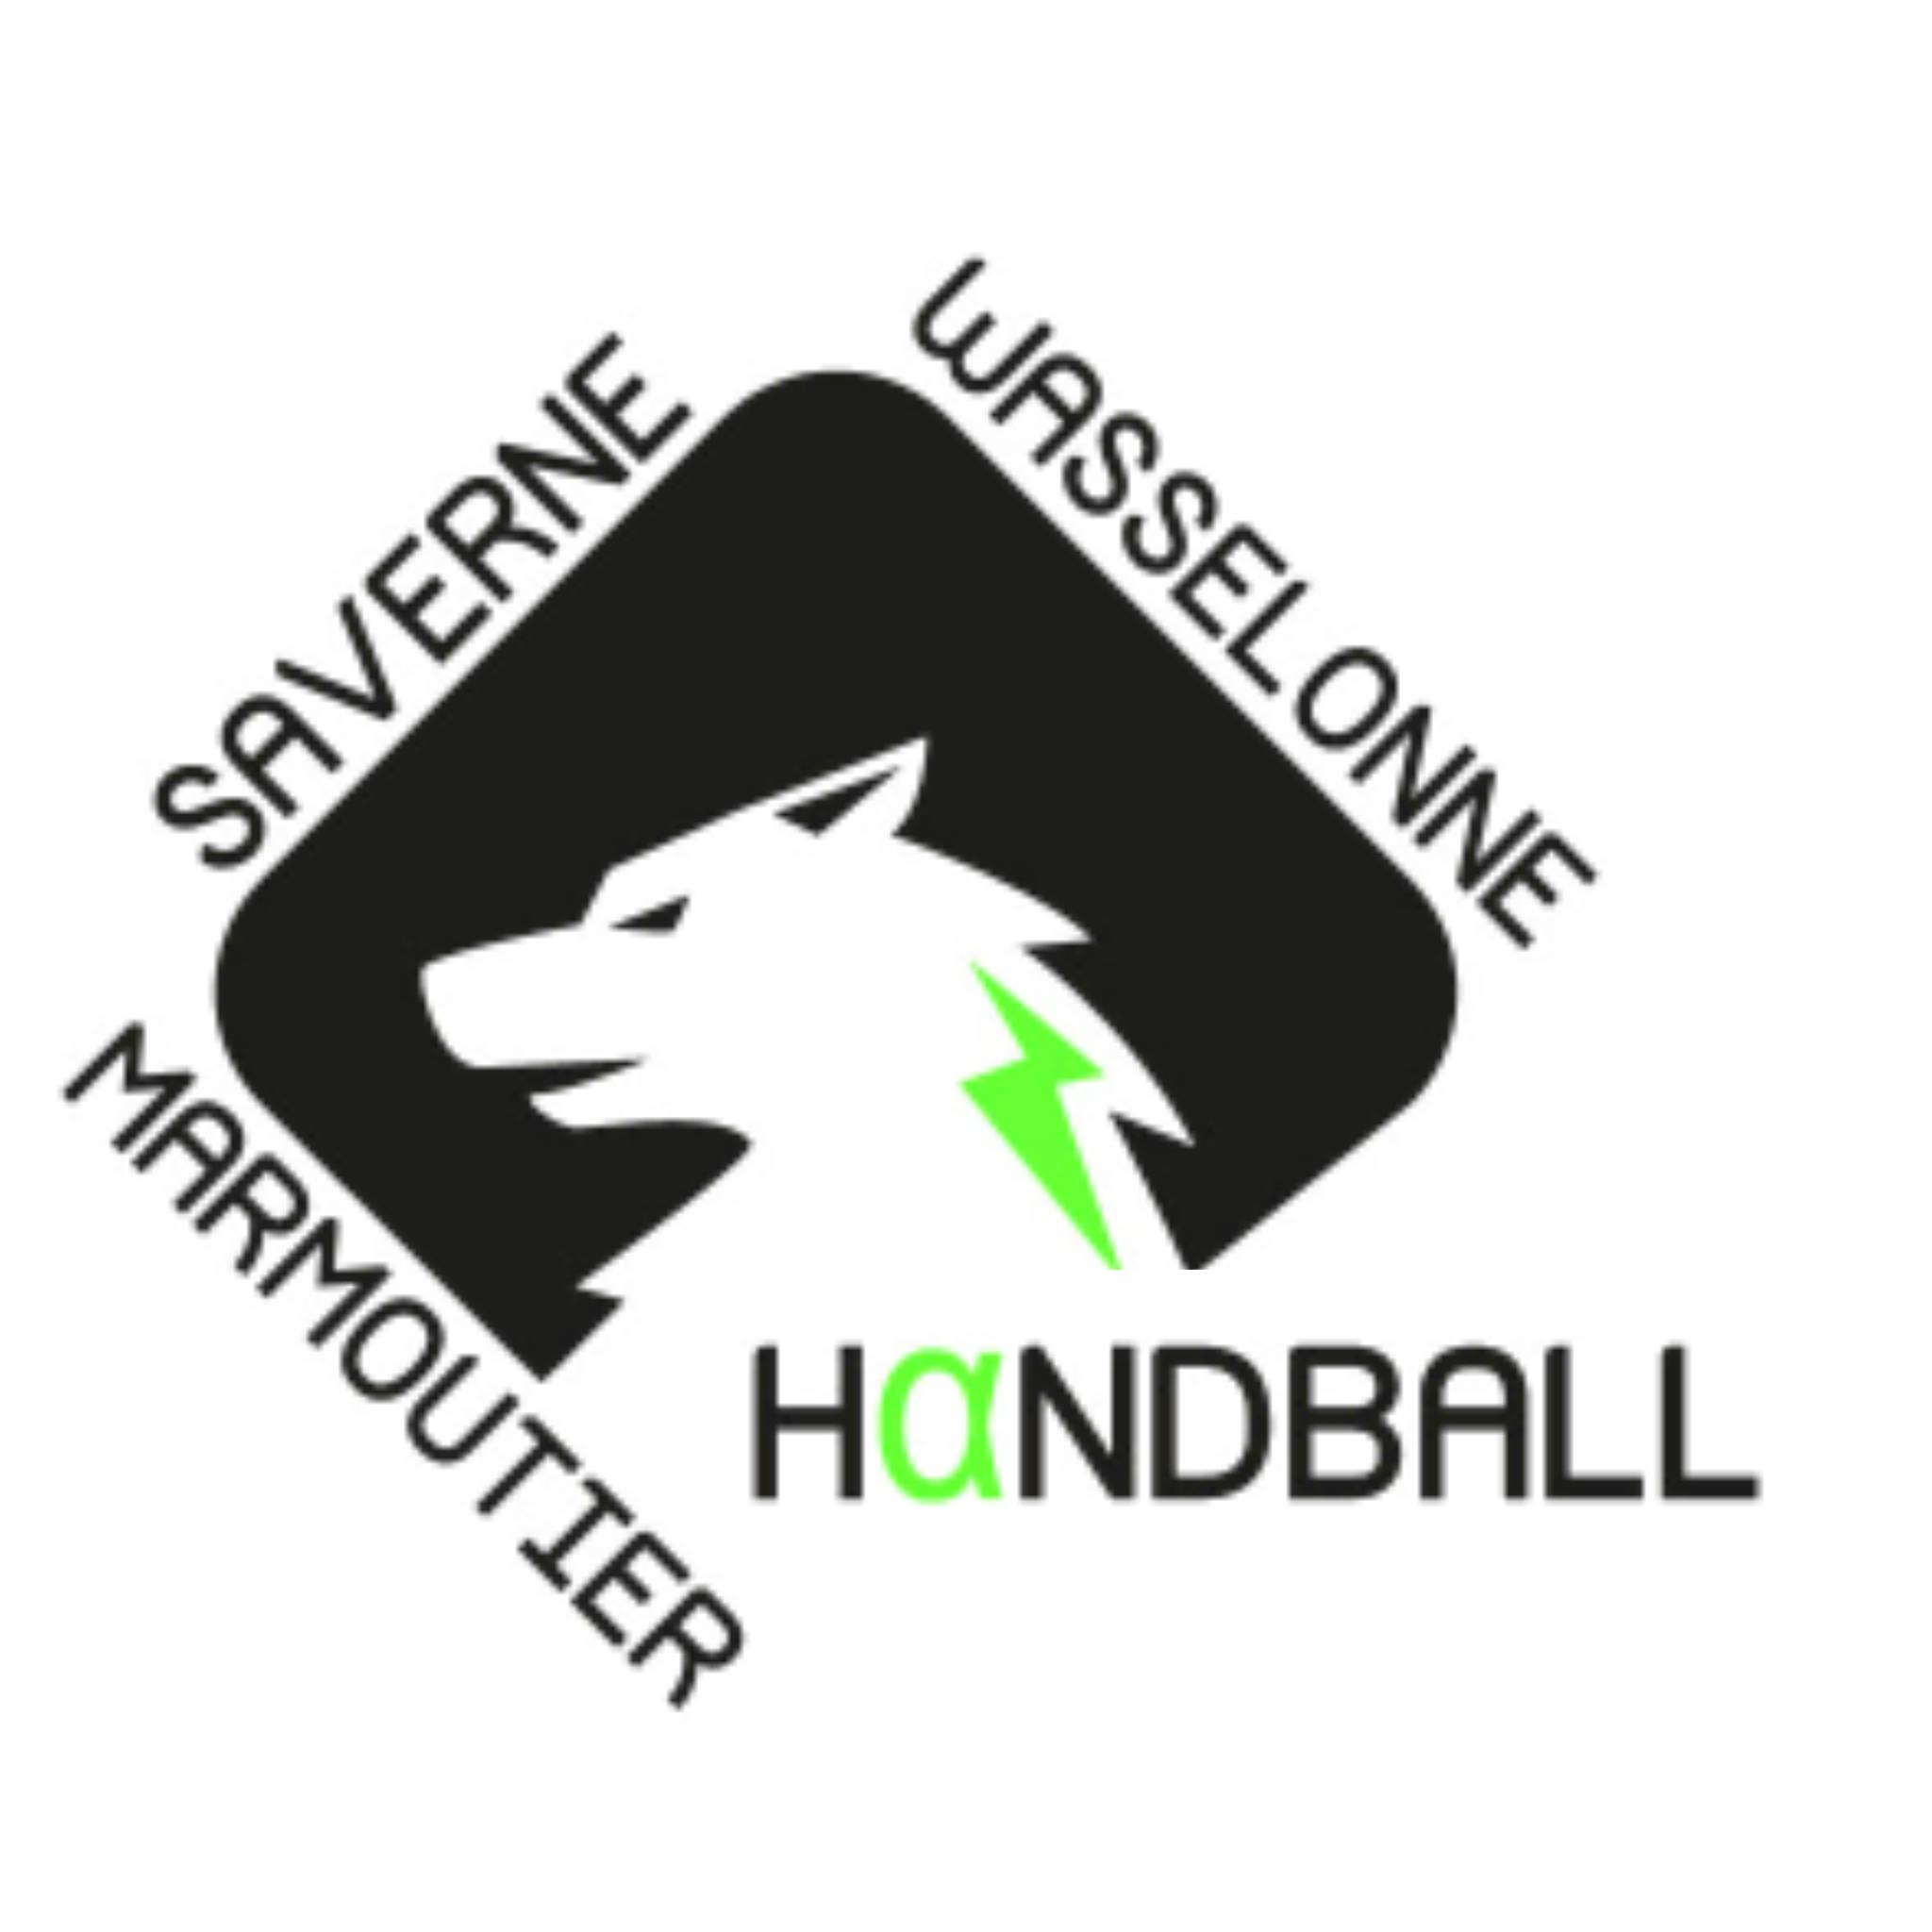 MWS Handball